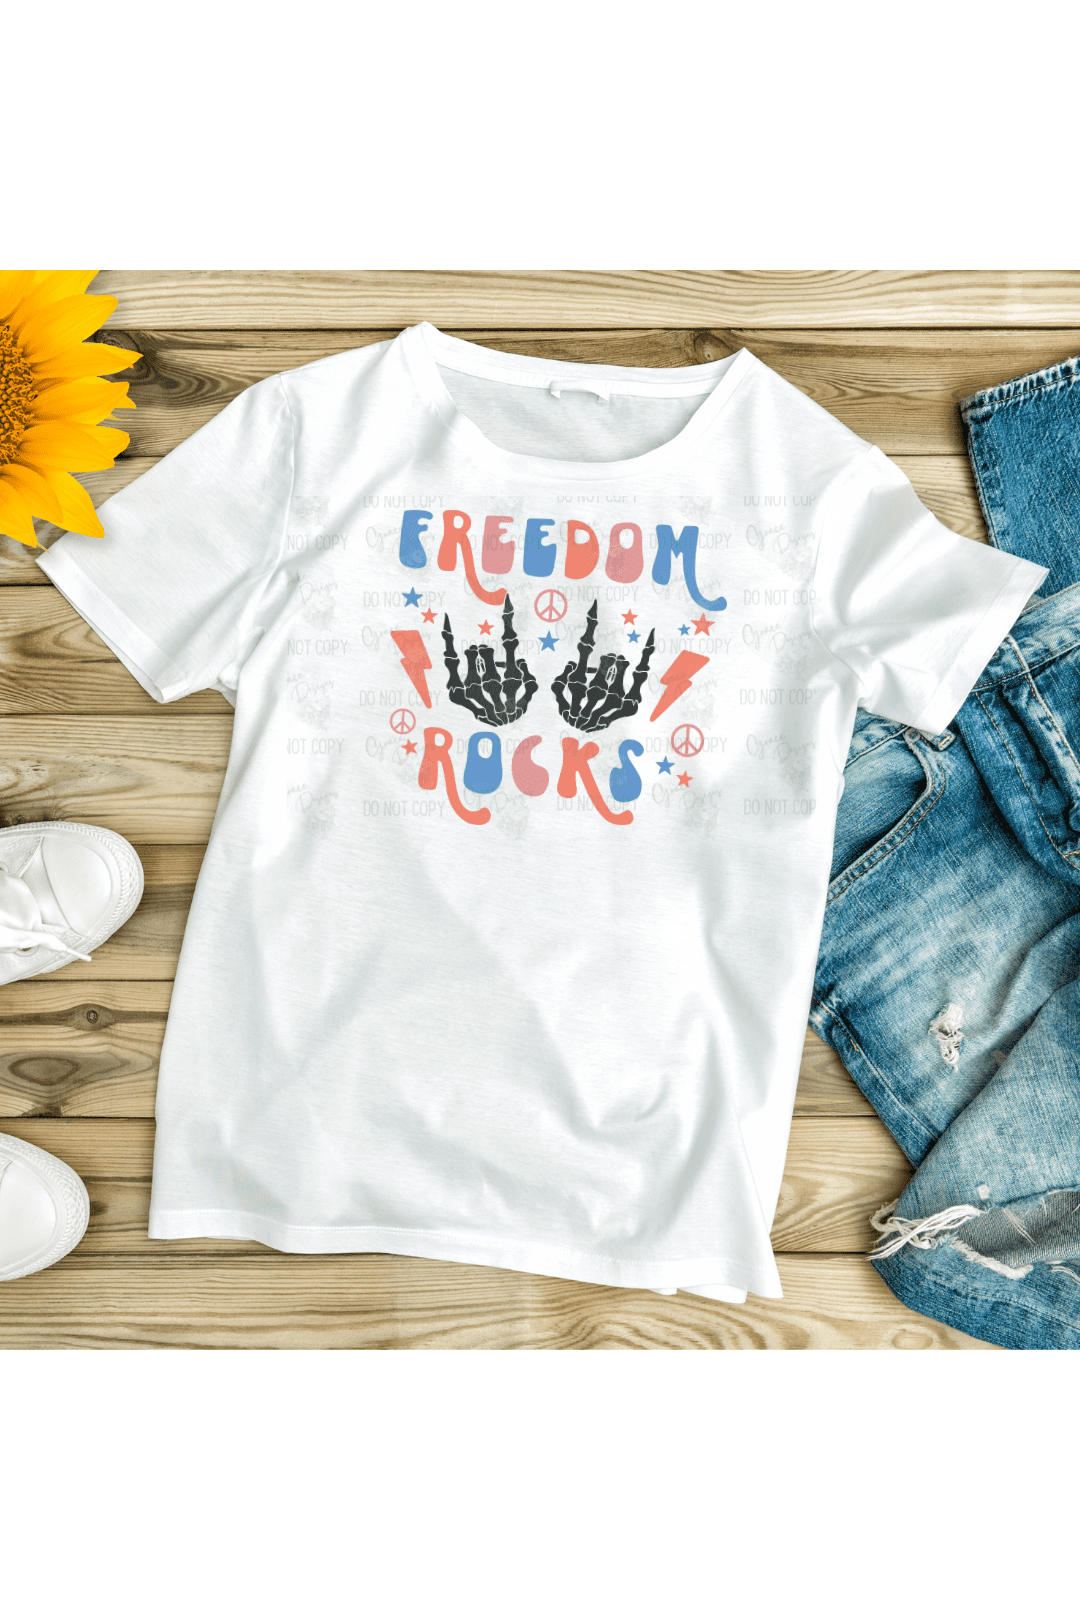 Freedom Rocks Design - Patriotic